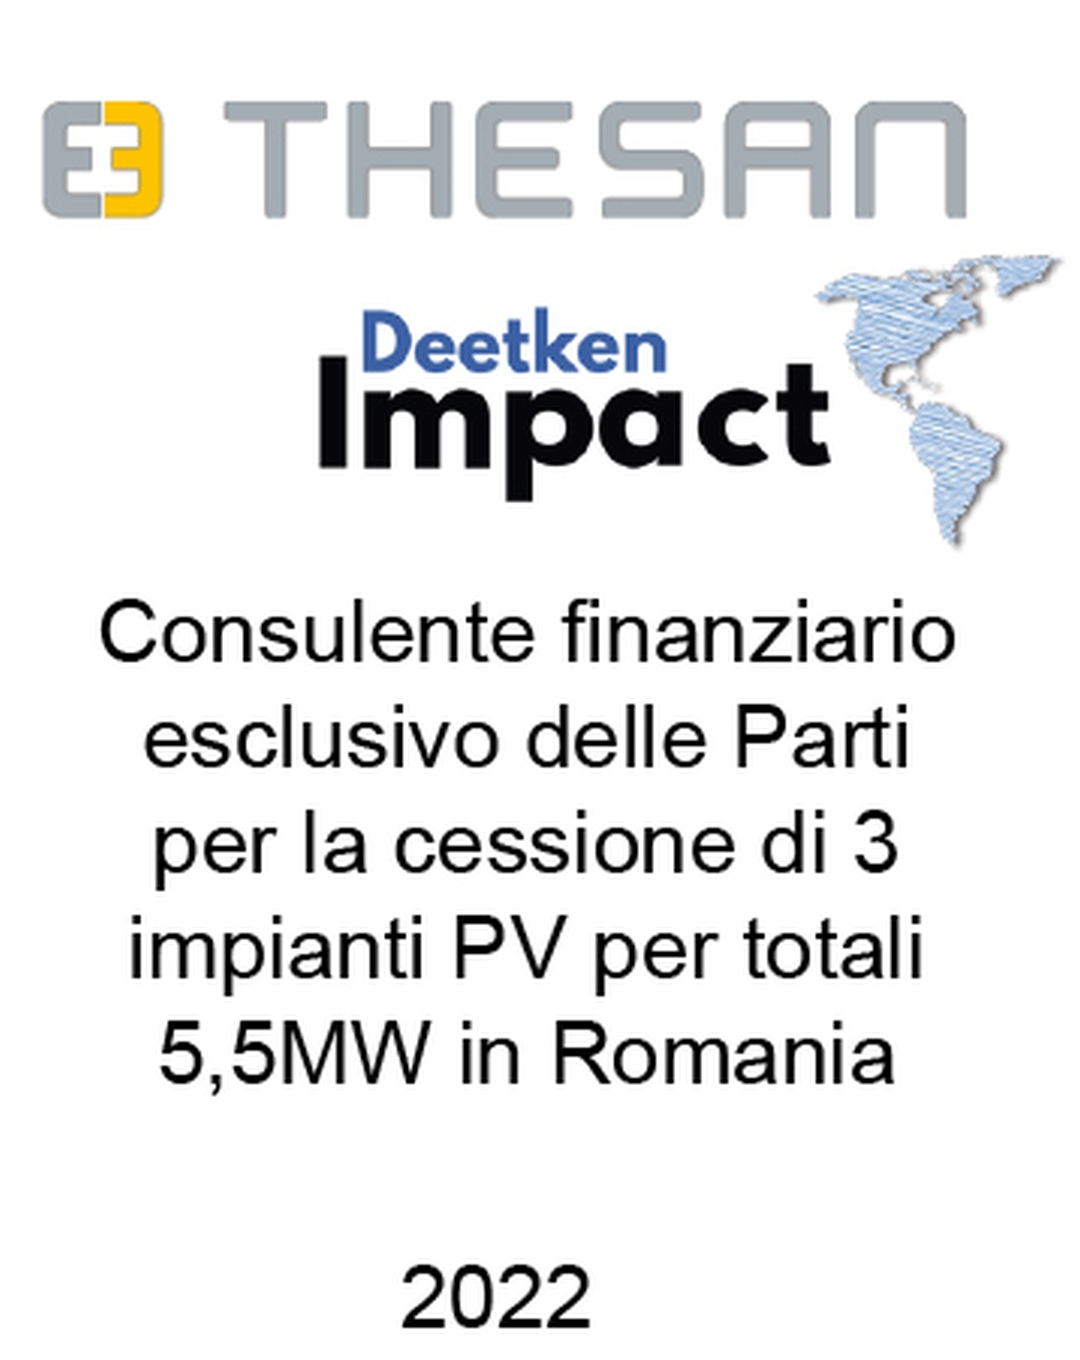 Consulente di Savio Thesan S.p.a. e Deetken Impact (Canada) nella cessione di 3 impianti fotovoltaici in Romania per una capacità complessiva di 5,5 MW. Ha agito in qualità di consulente finanziario unico del Venditore e dell'Acquirente. Incarico completato nel 2022